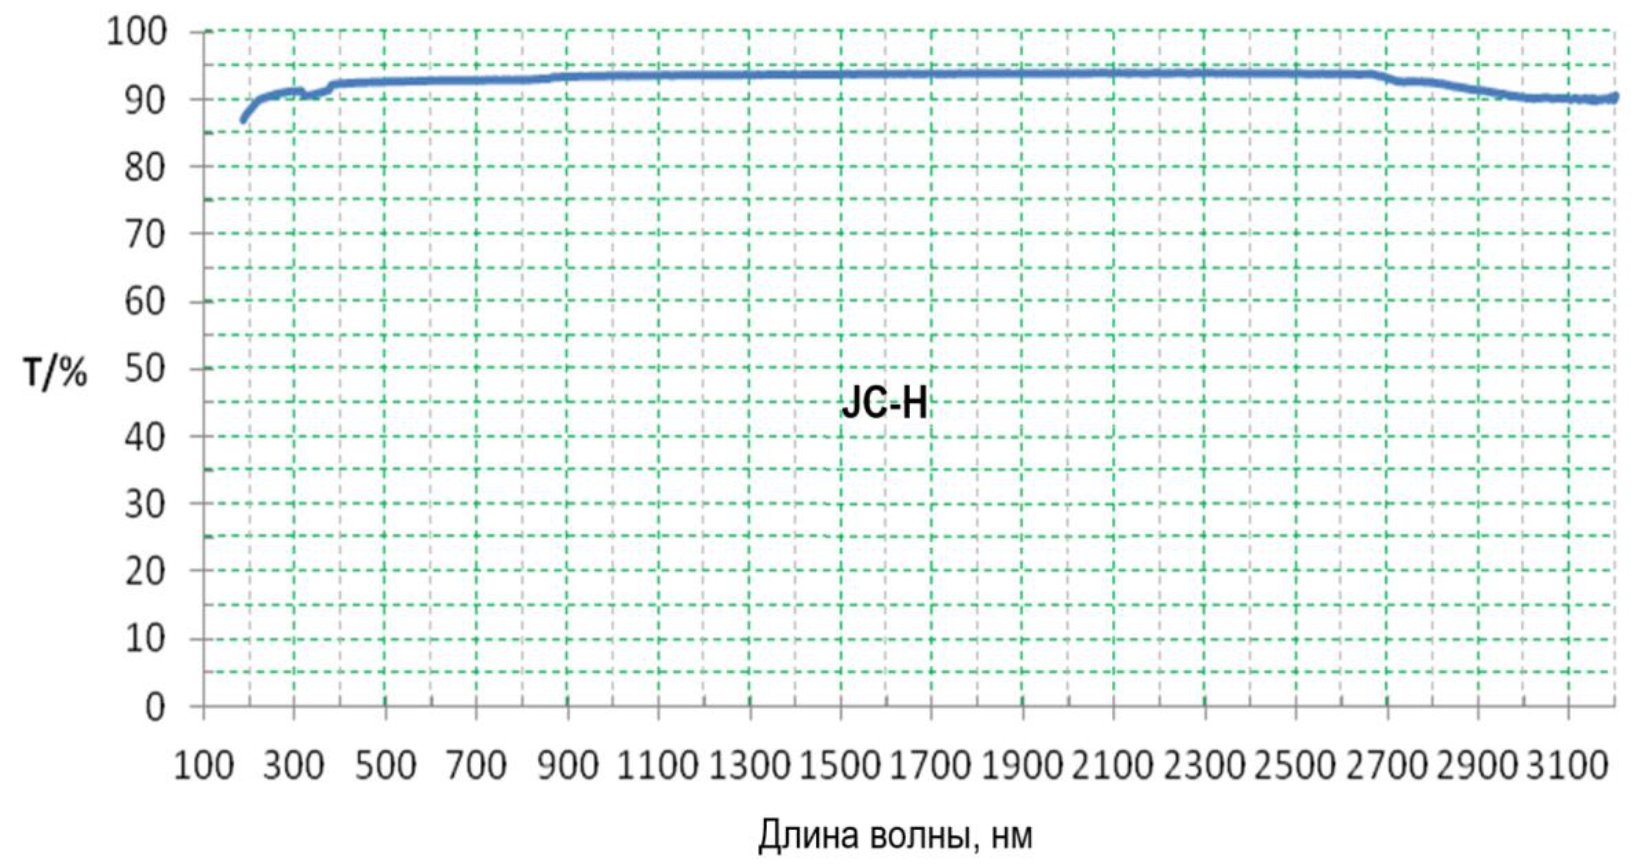 Пропускание JC-H в области спектра 100-3200 нм